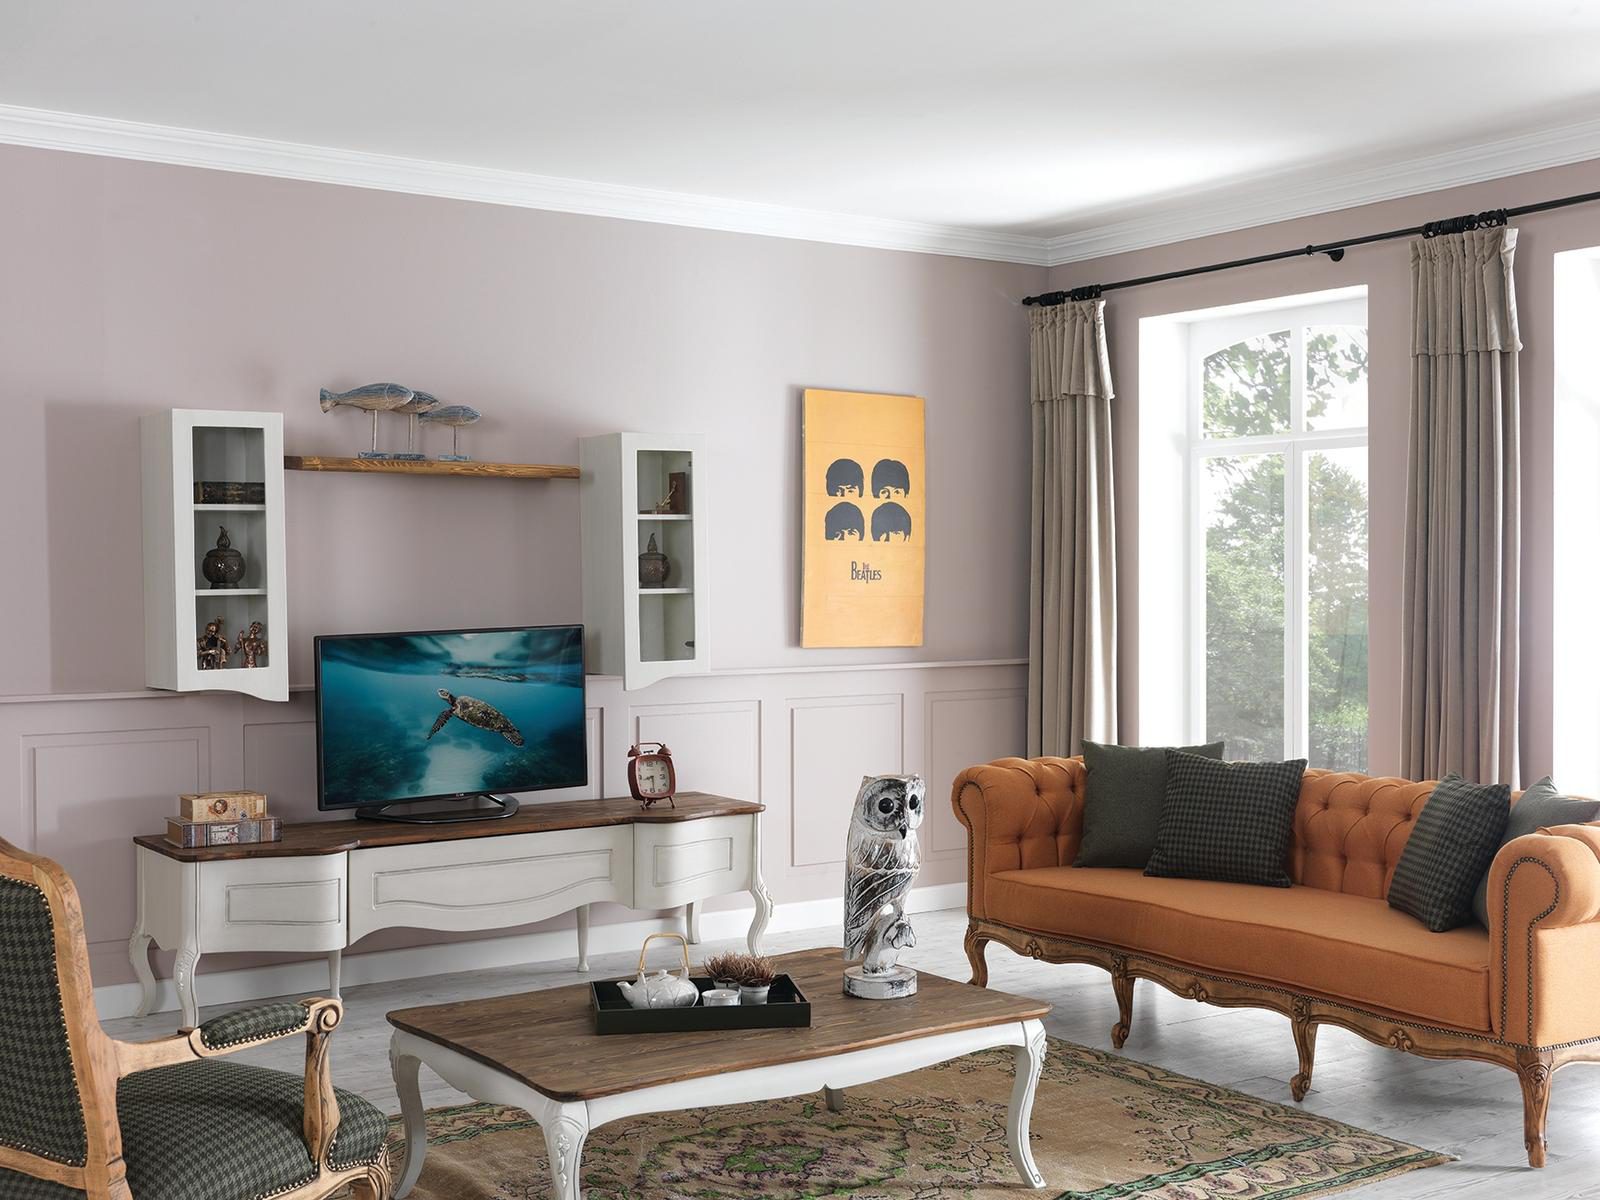 Vintage Beyaz Tv Ünitesi modelimiz şık tasarımı ve ceviz tabla detayları ile tv keyfinizi üst düzeye çıkarmaya Parlak Ev ile geliyor.